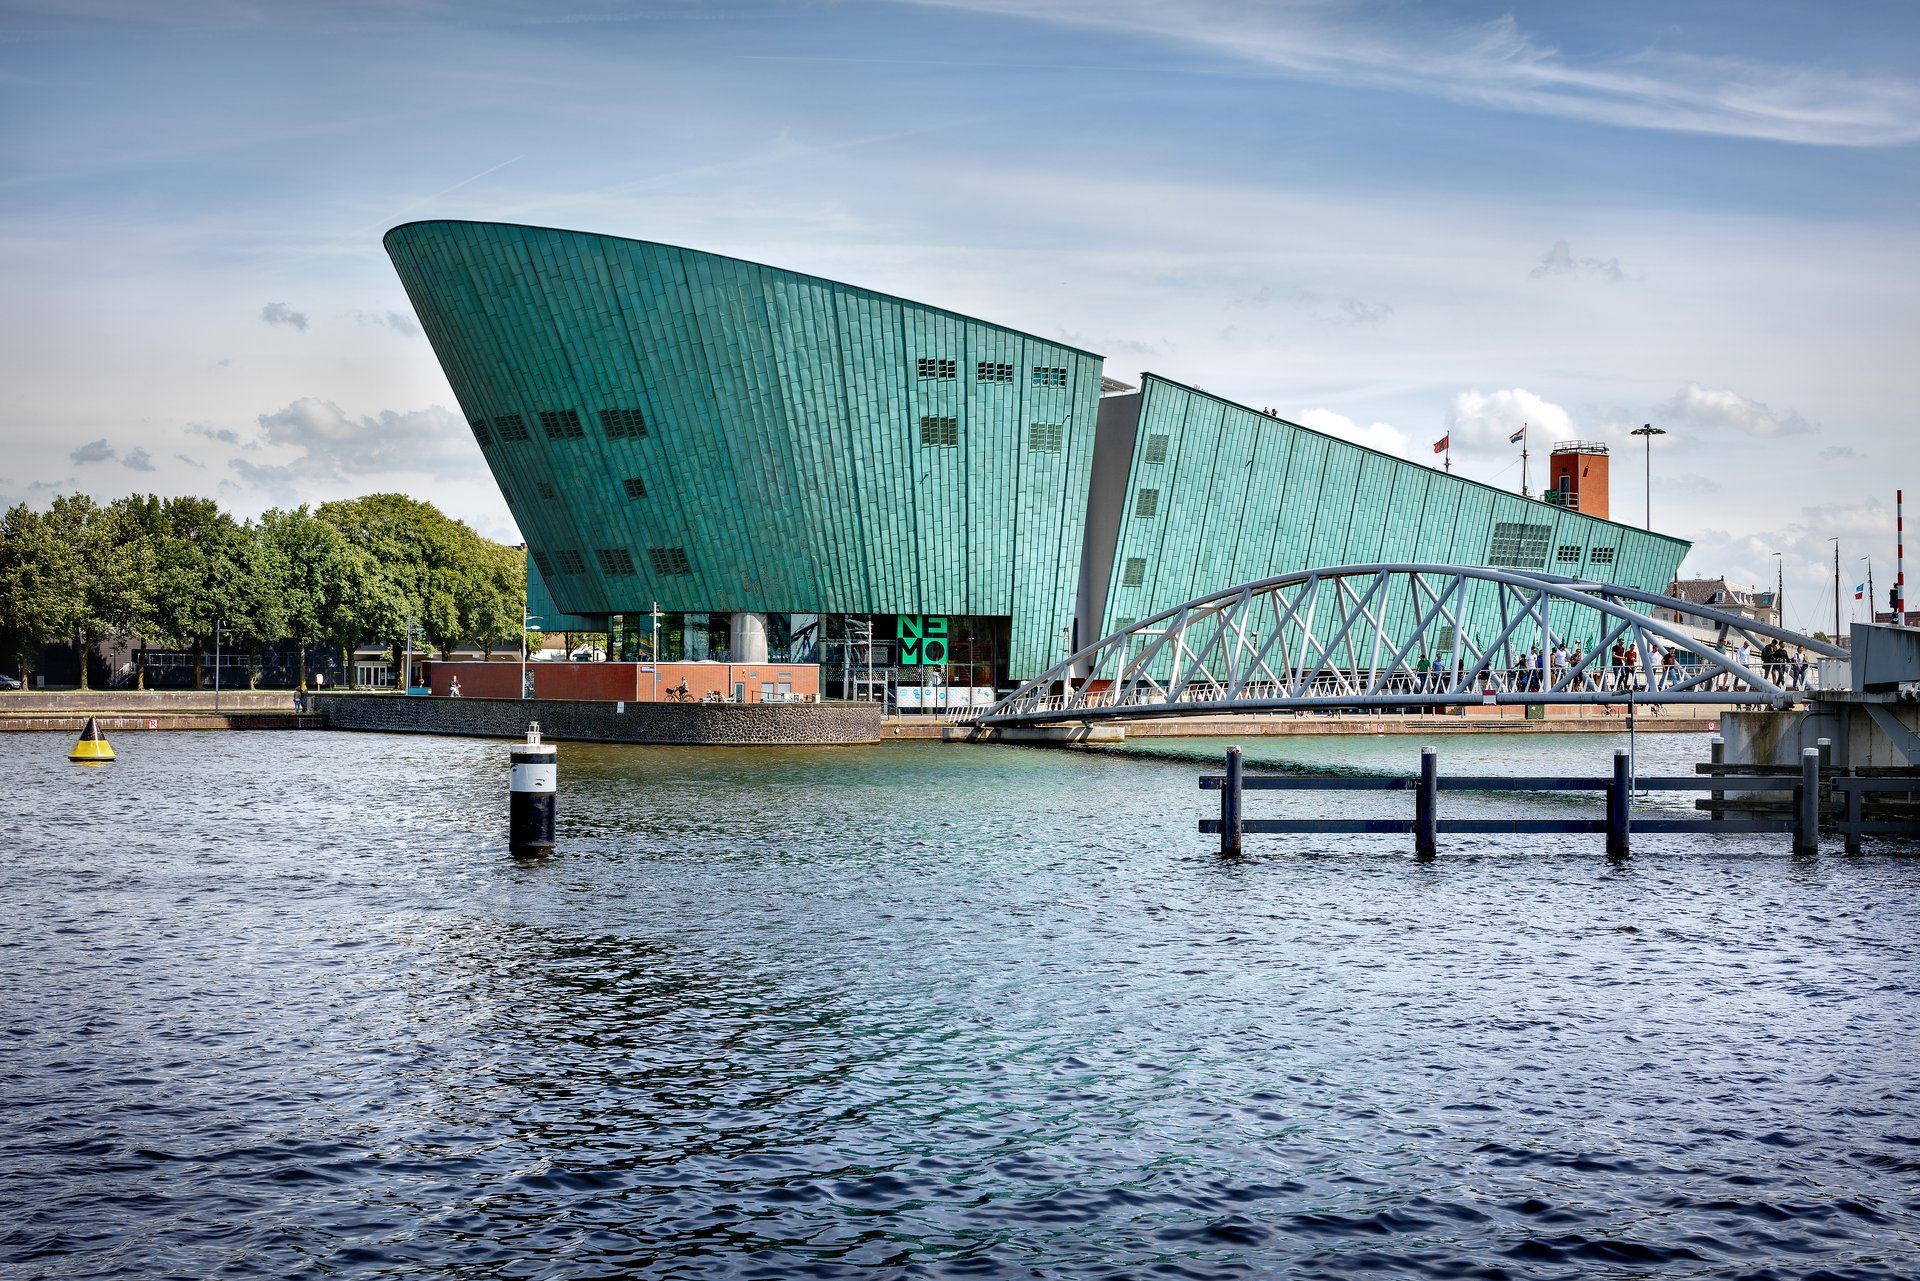 Het Nemo science museum in Amsterdam